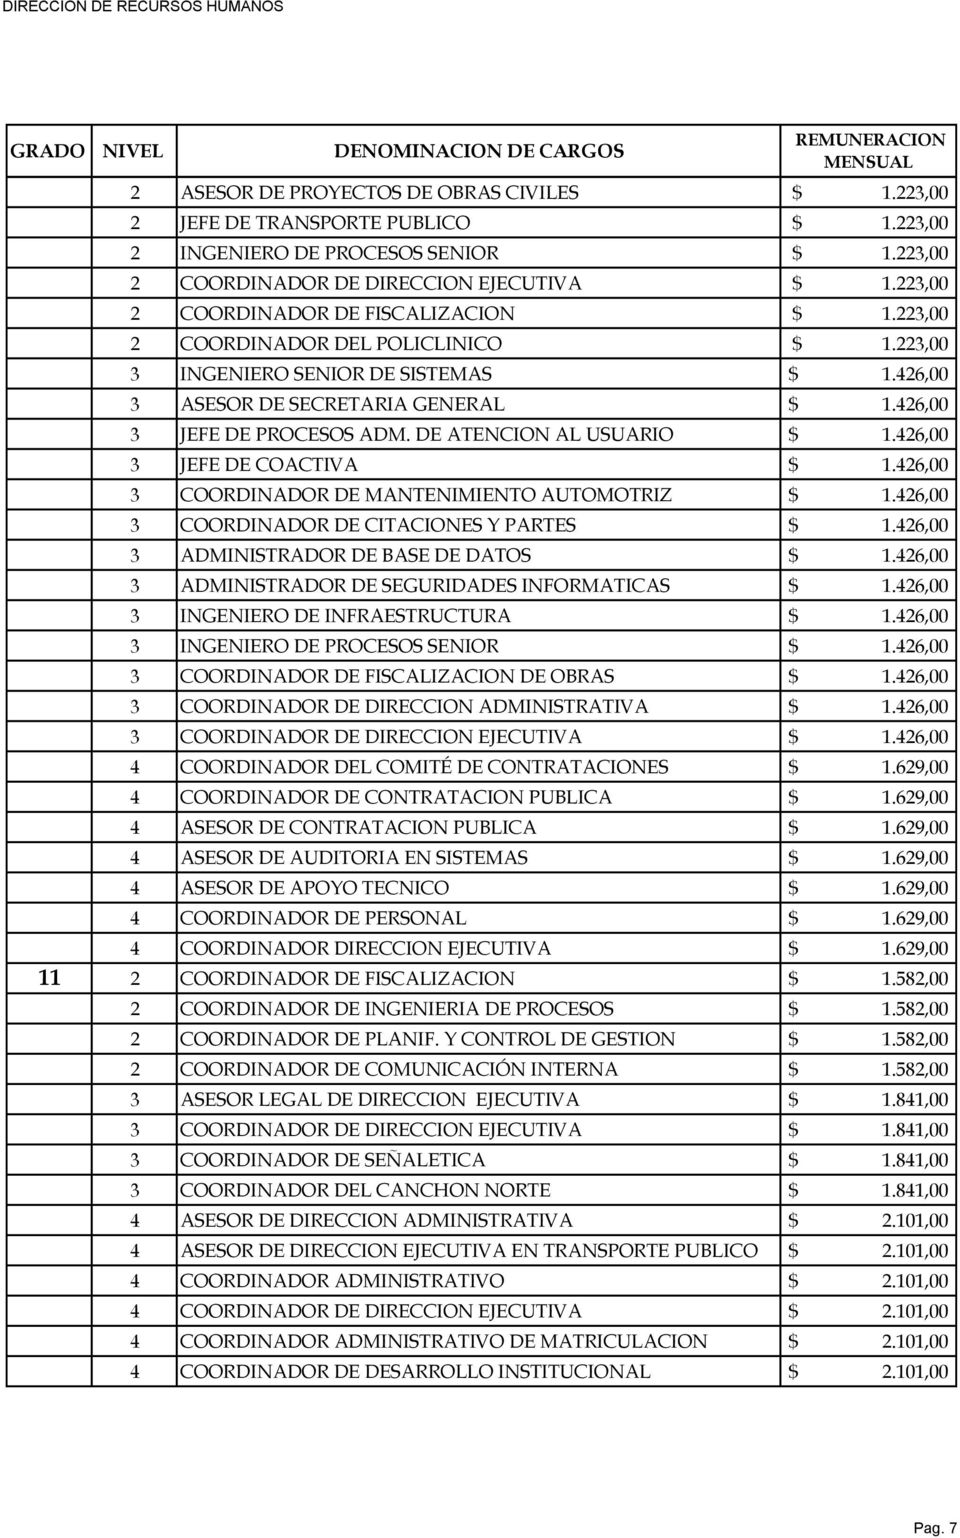 DE ATENCION AL USUARIO $ 1.426,00 3 JEFE DE COACTIVA $ 1.426,00 3 COORDINADOR DE MANTENIMIENTO AUTOMOTRIZ $ 1.426,00 3 COORDINADOR DE CITACIONES Y PARTES $ 1.